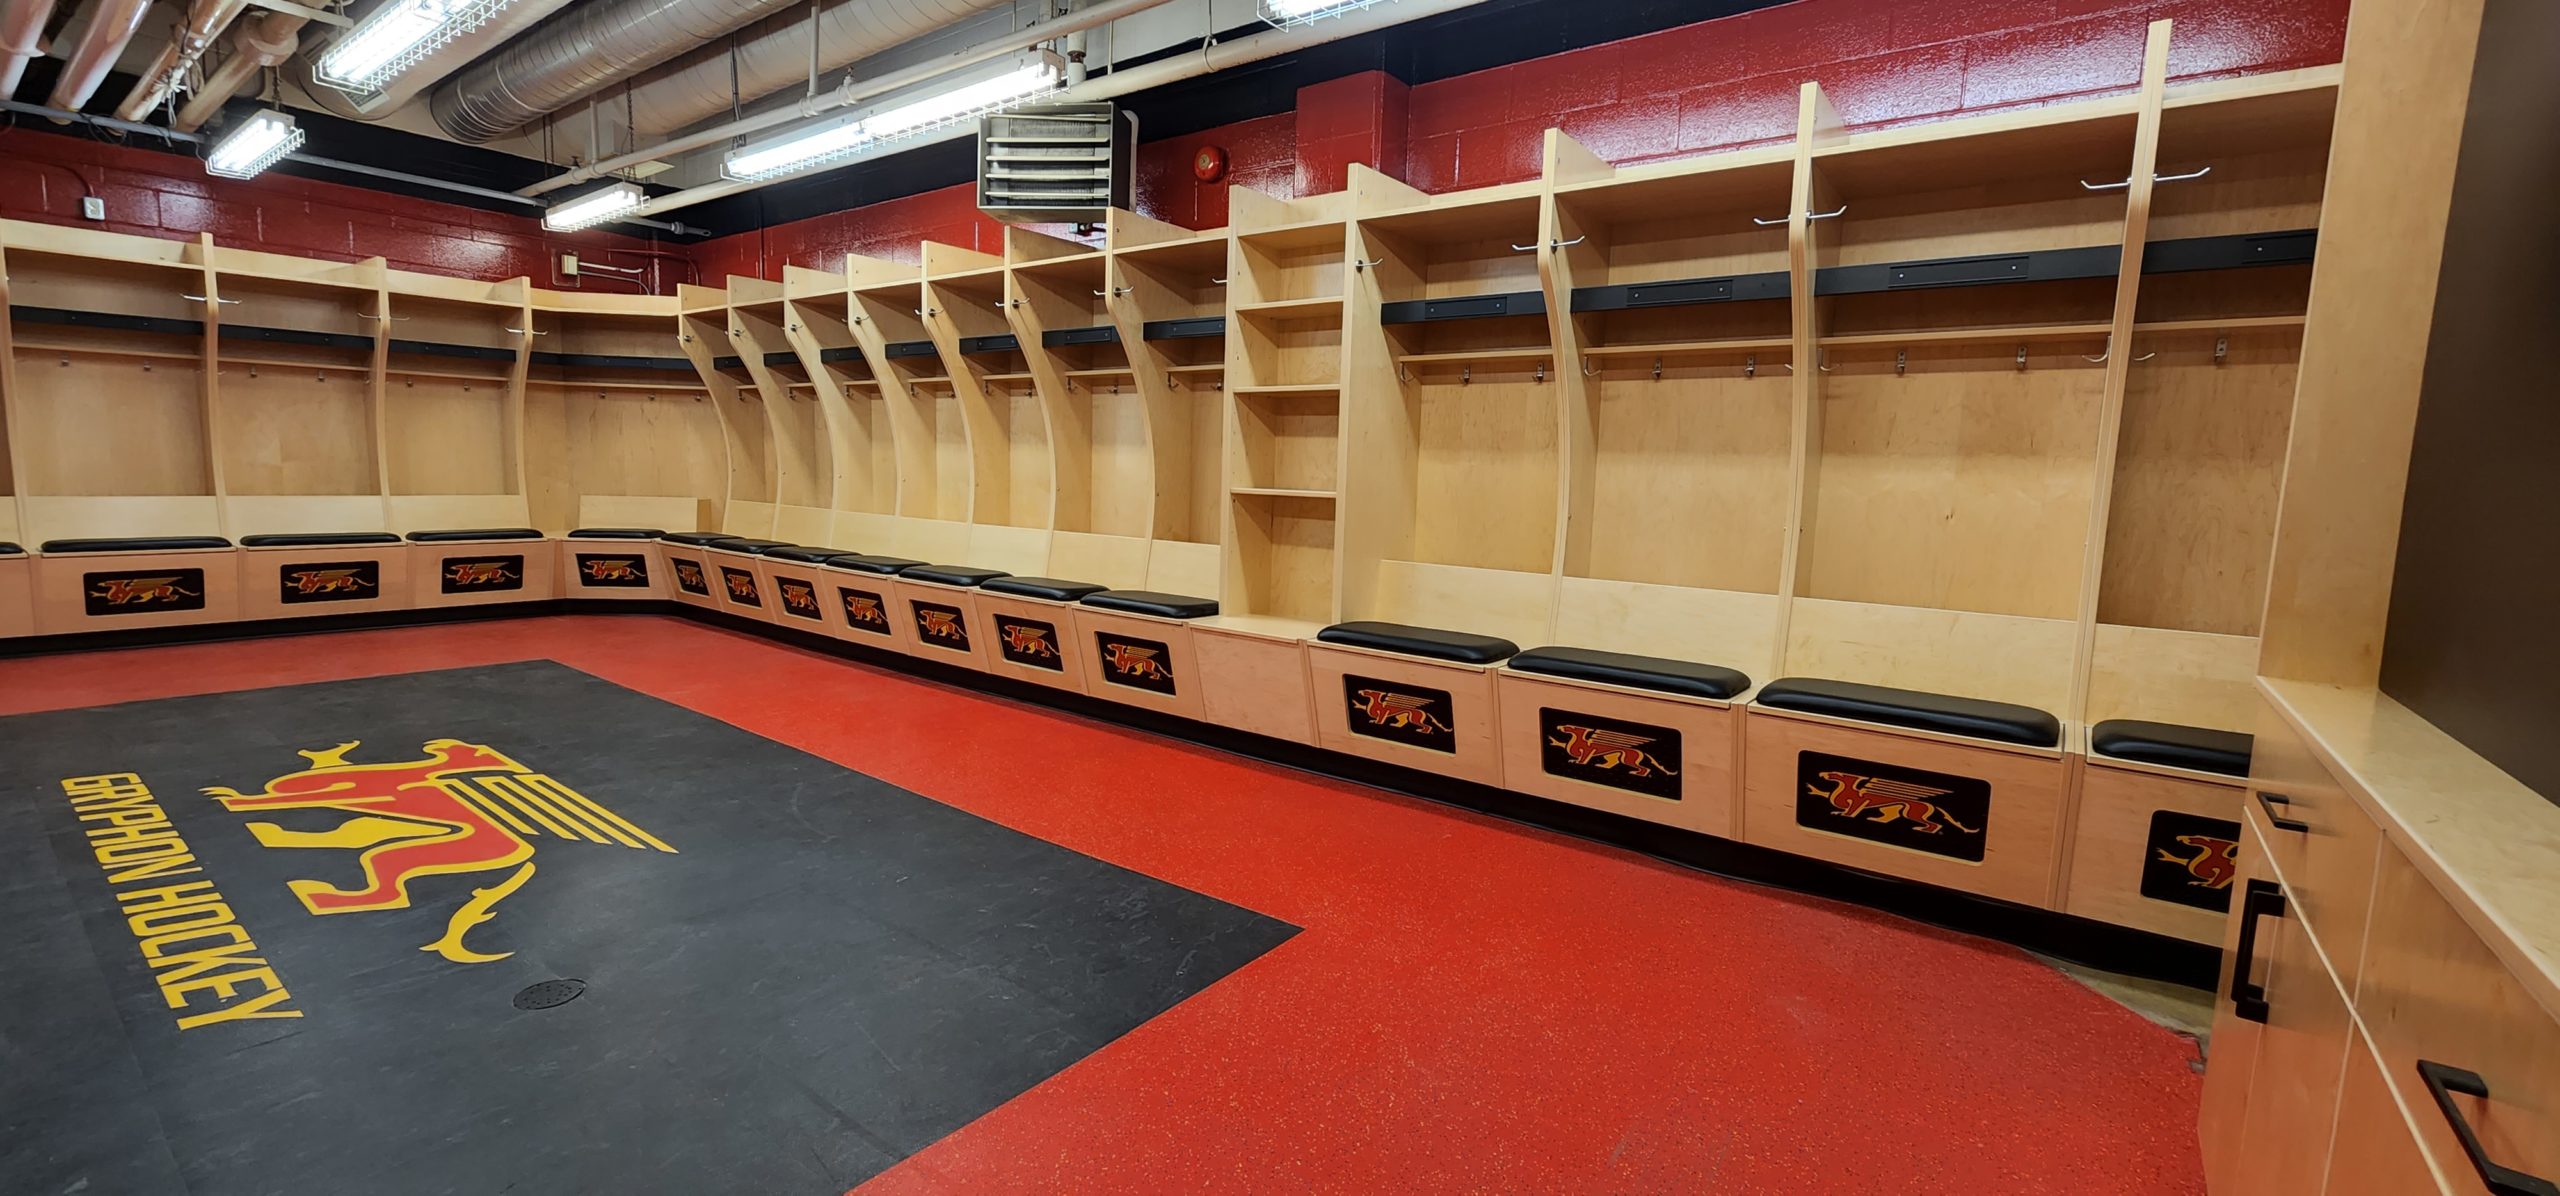 Hockey locker shelf